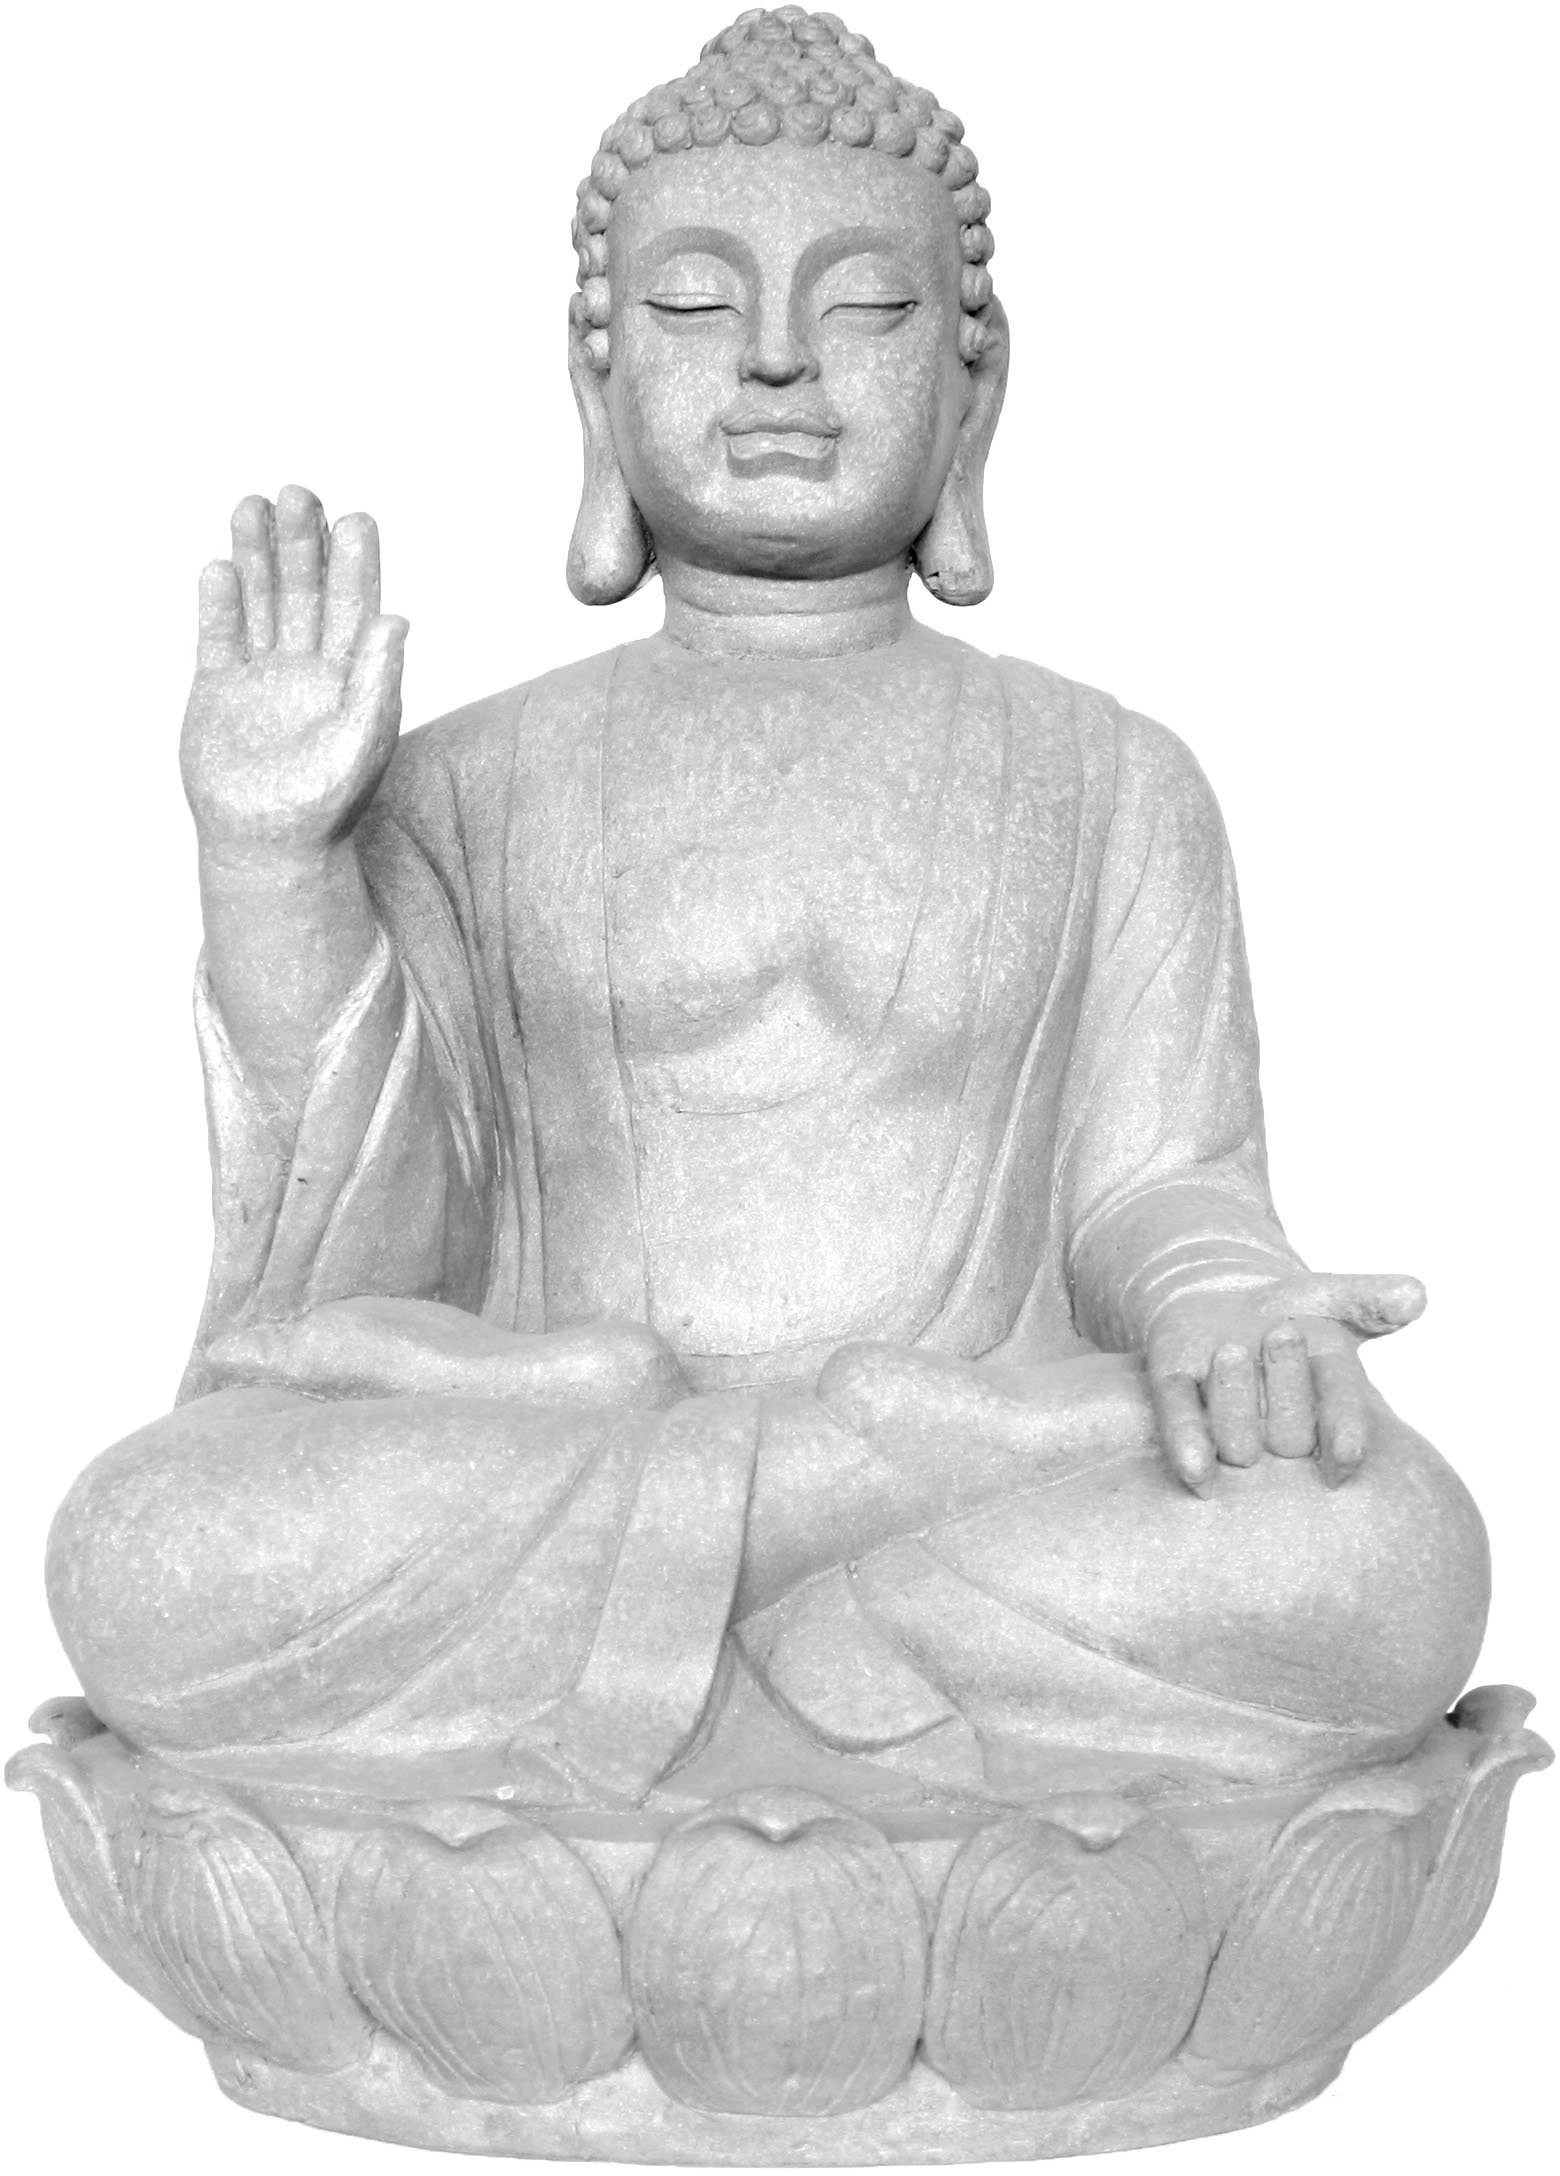 cm 74 Deko-Figur OBI kaufen bei Buddha Tan Tian